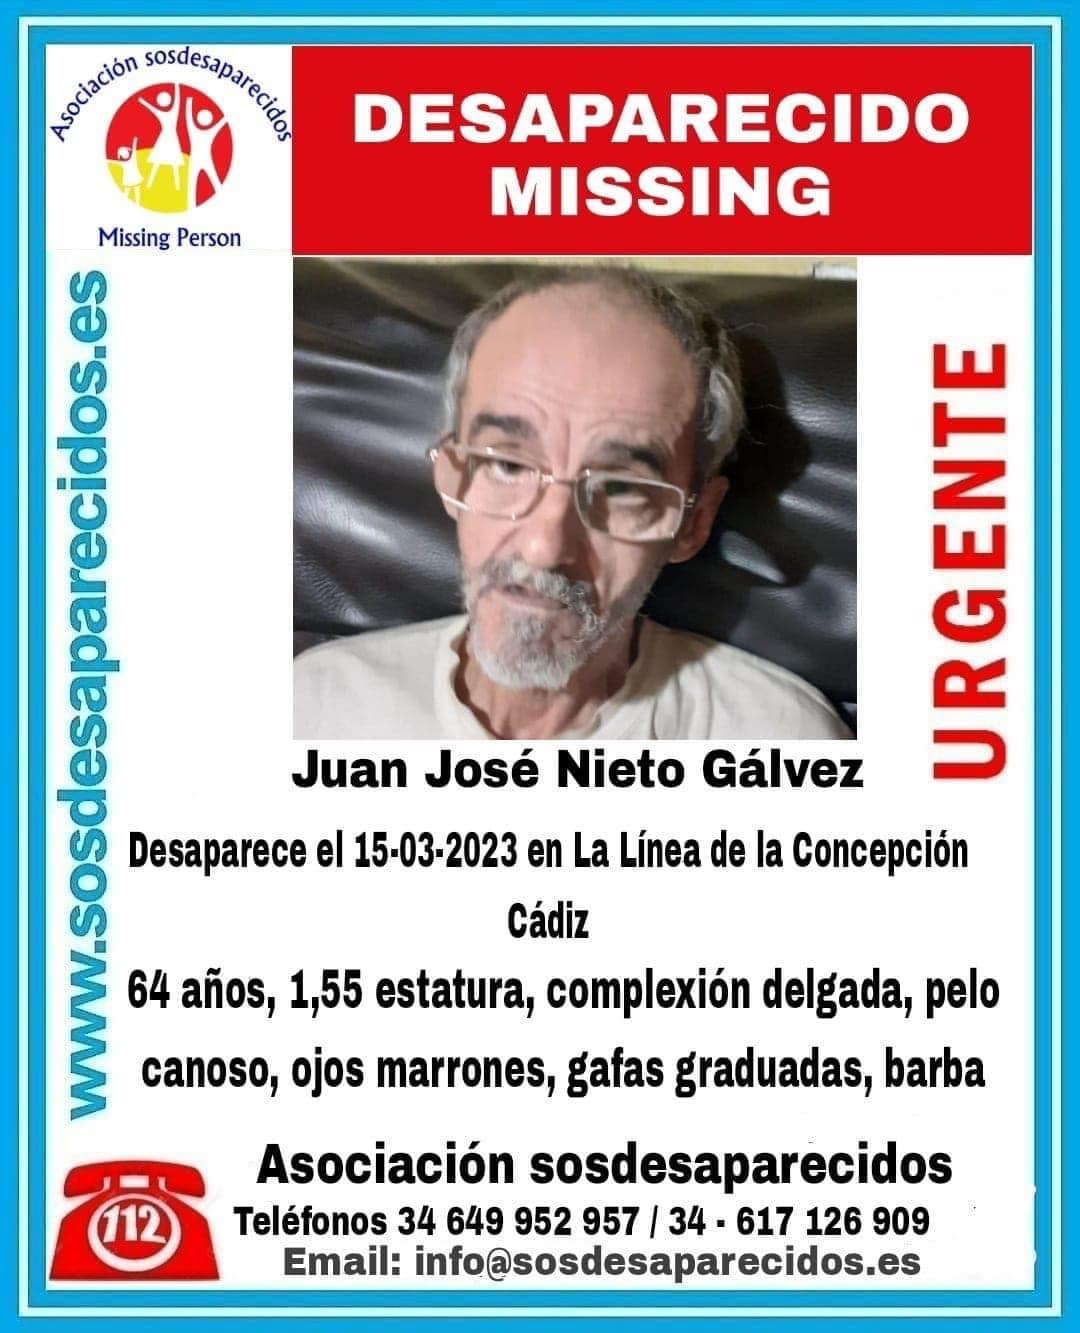 El Ayuntamiento pide colaboración para encontrar a Juan José Nieto, desaparecido desde el pasado 15 de marzo.